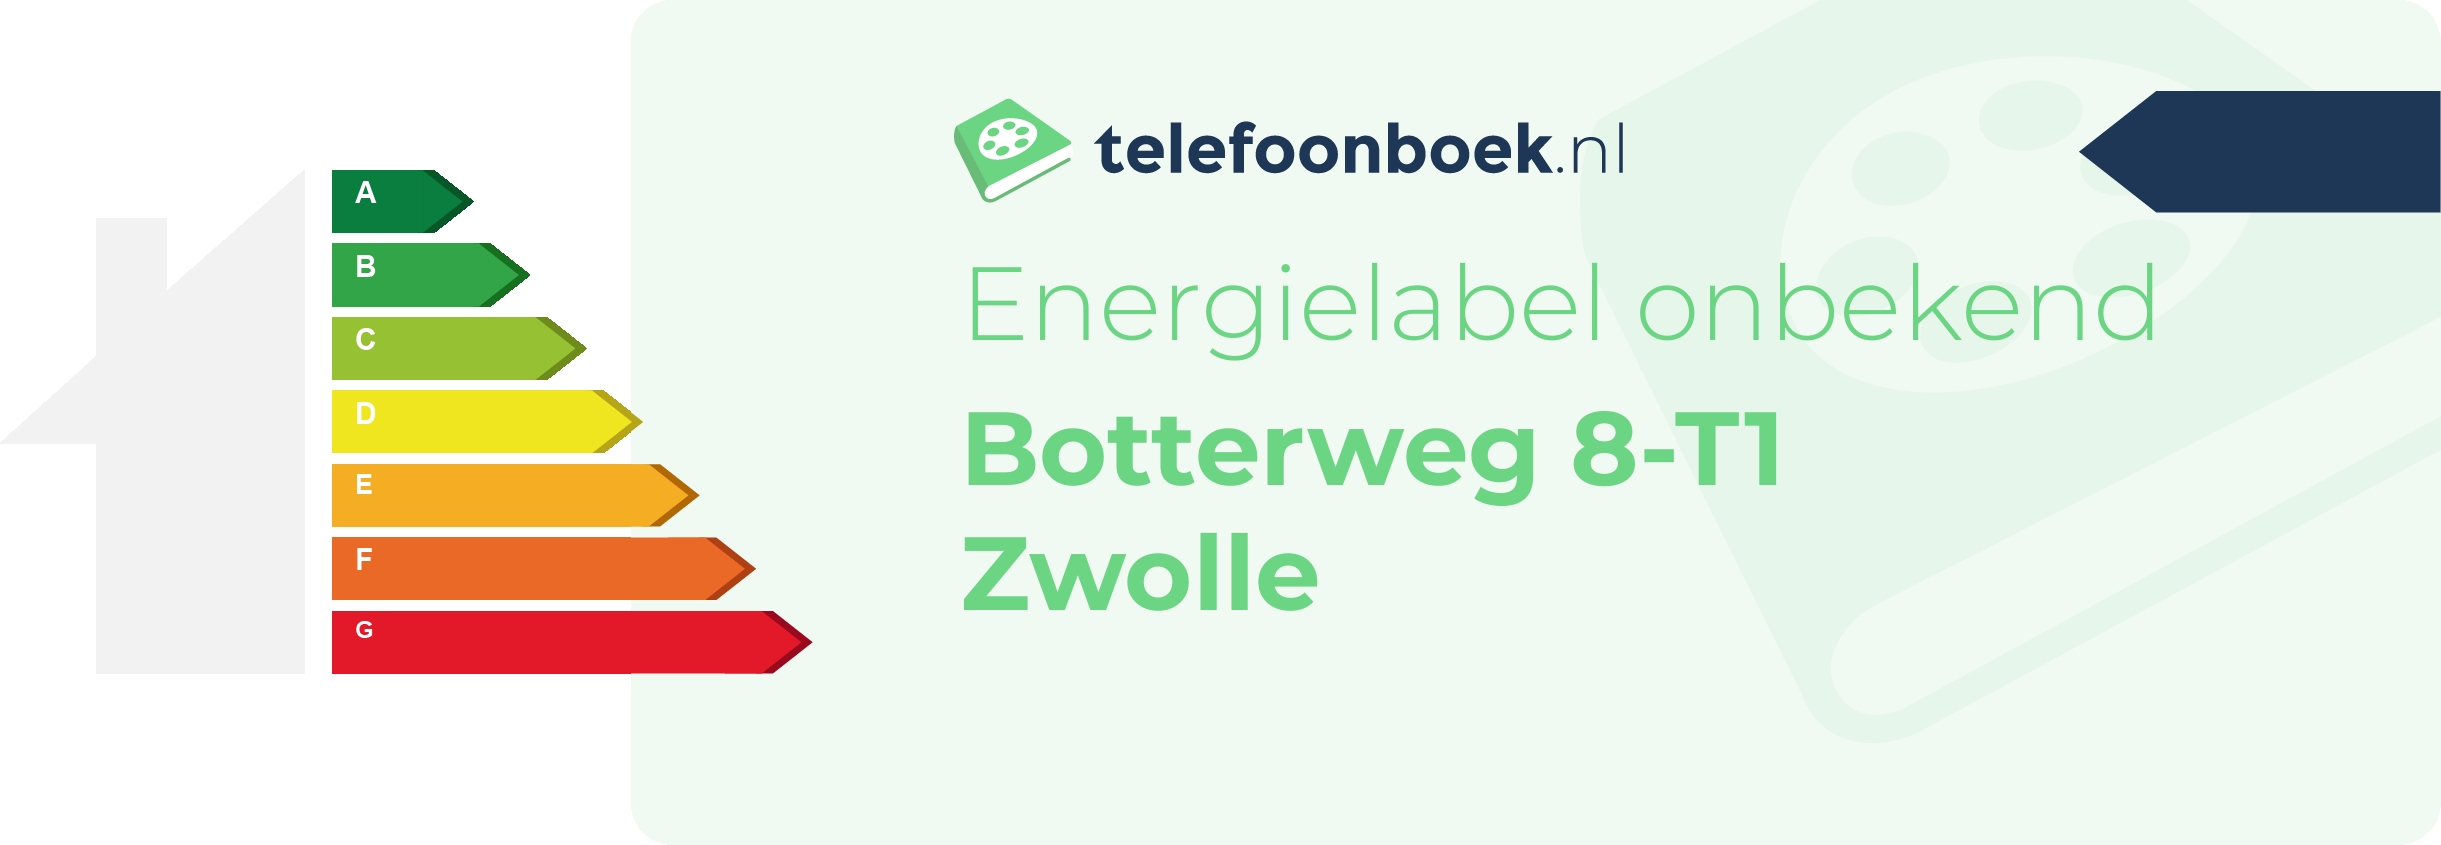 Energielabel Botterweg 8-T1 Zwolle